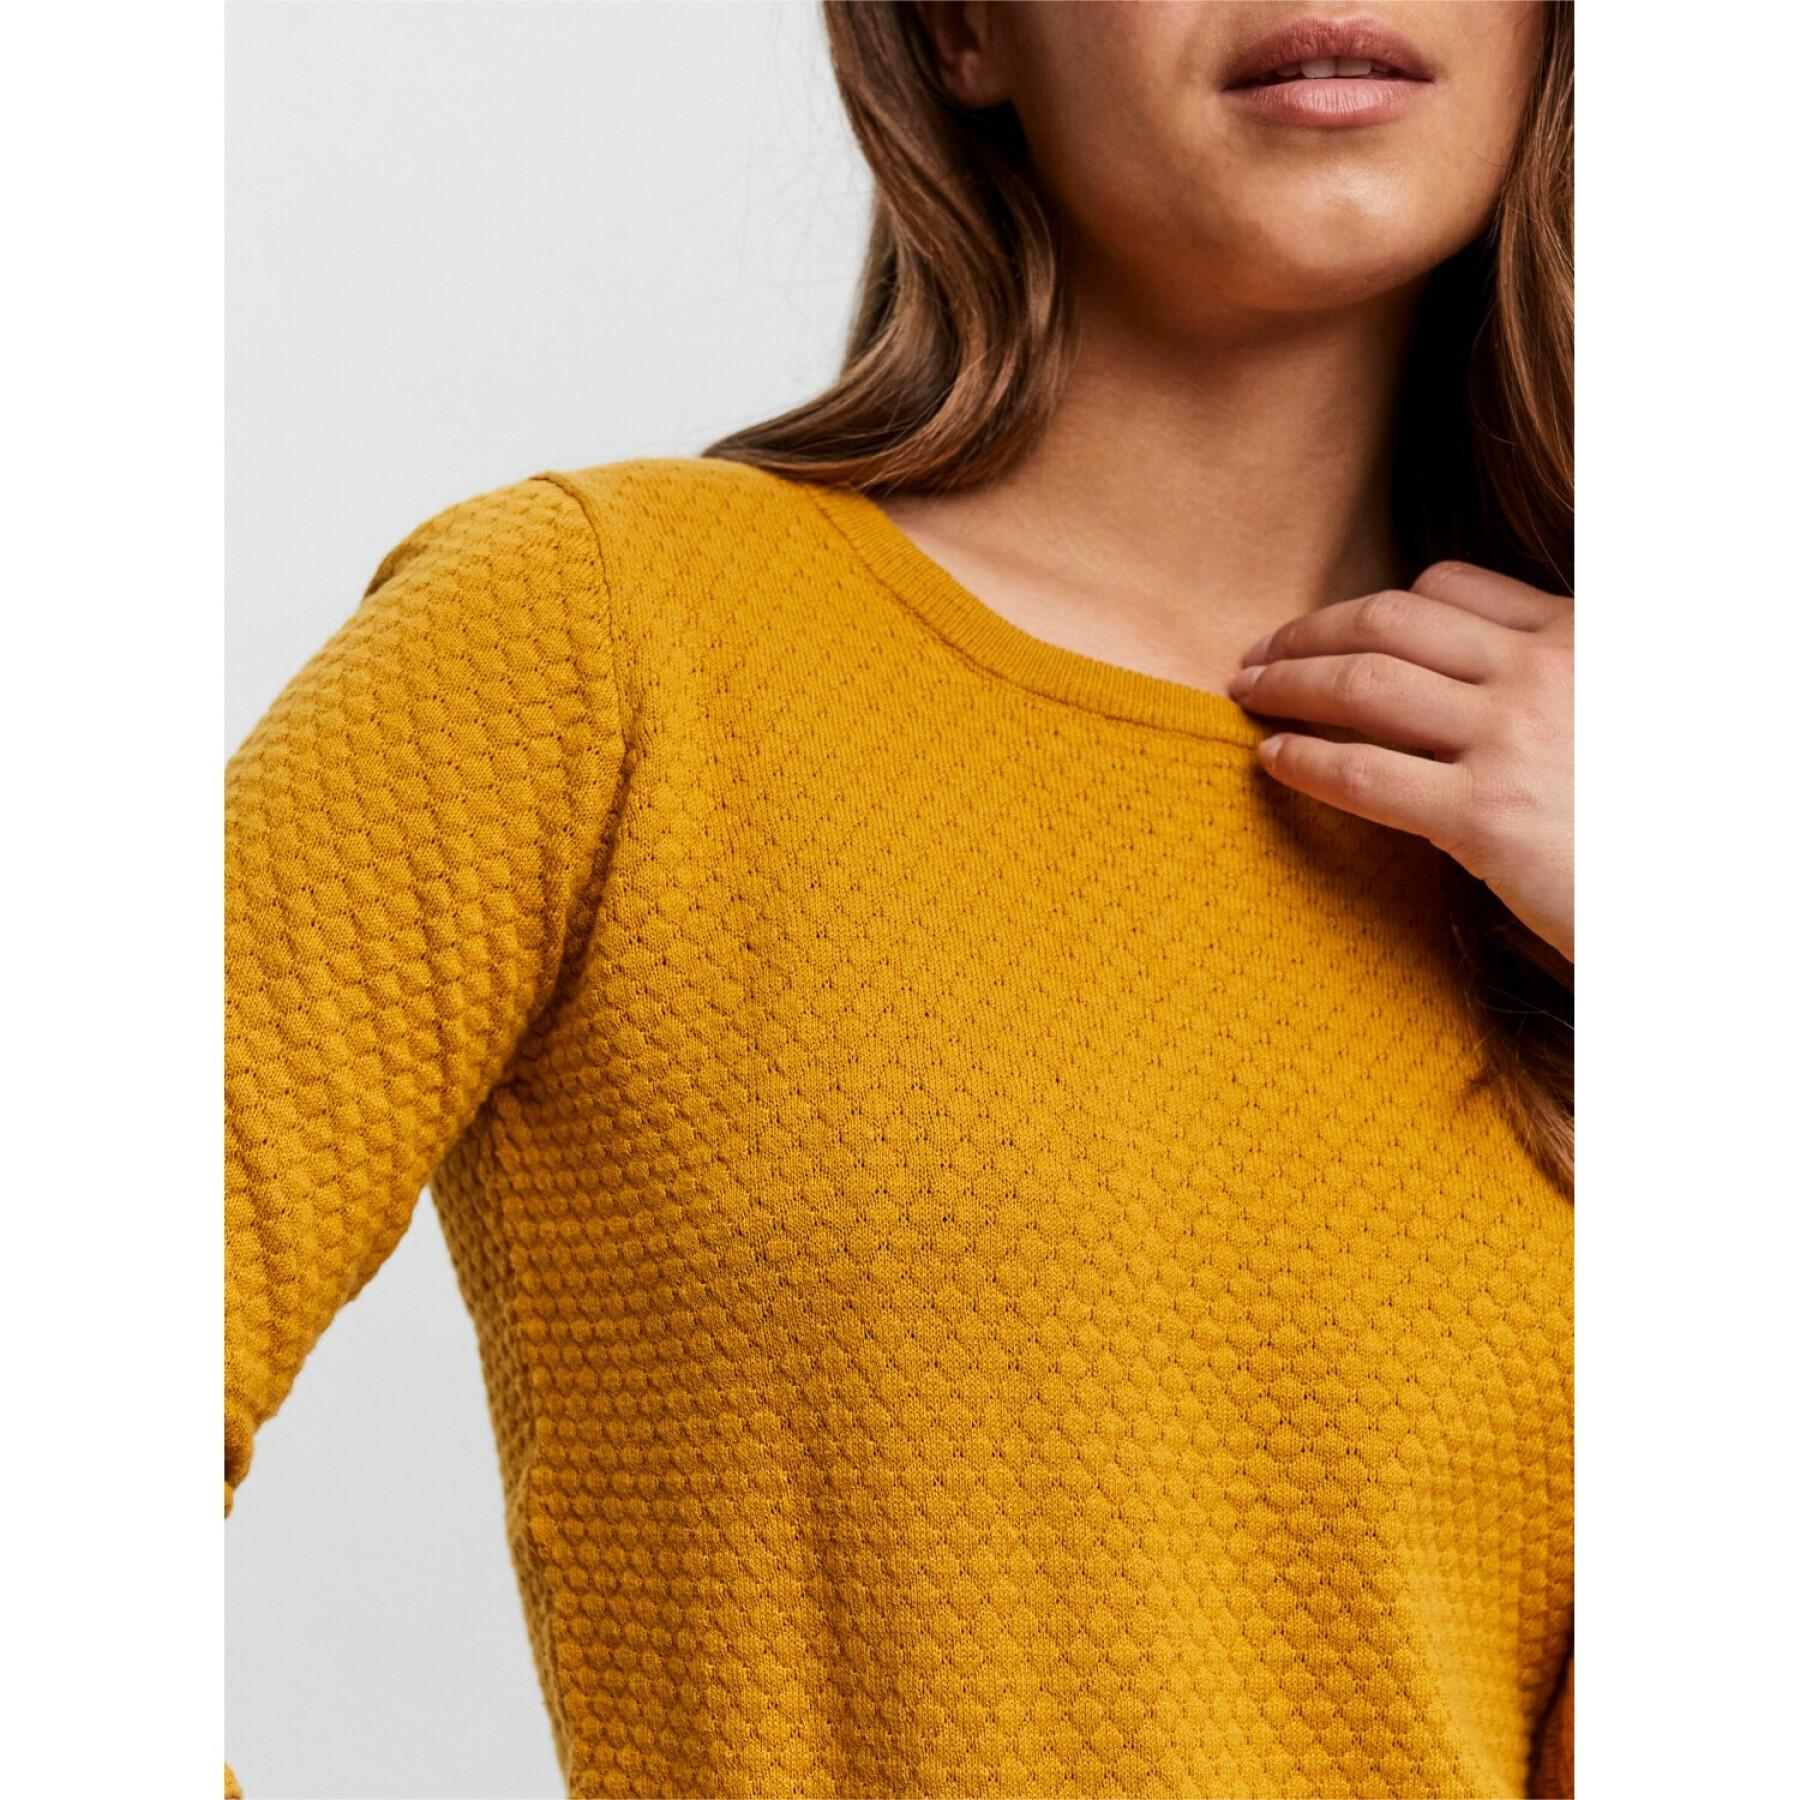 Suéter de mujer con cuello en O Vero Moda vmcare